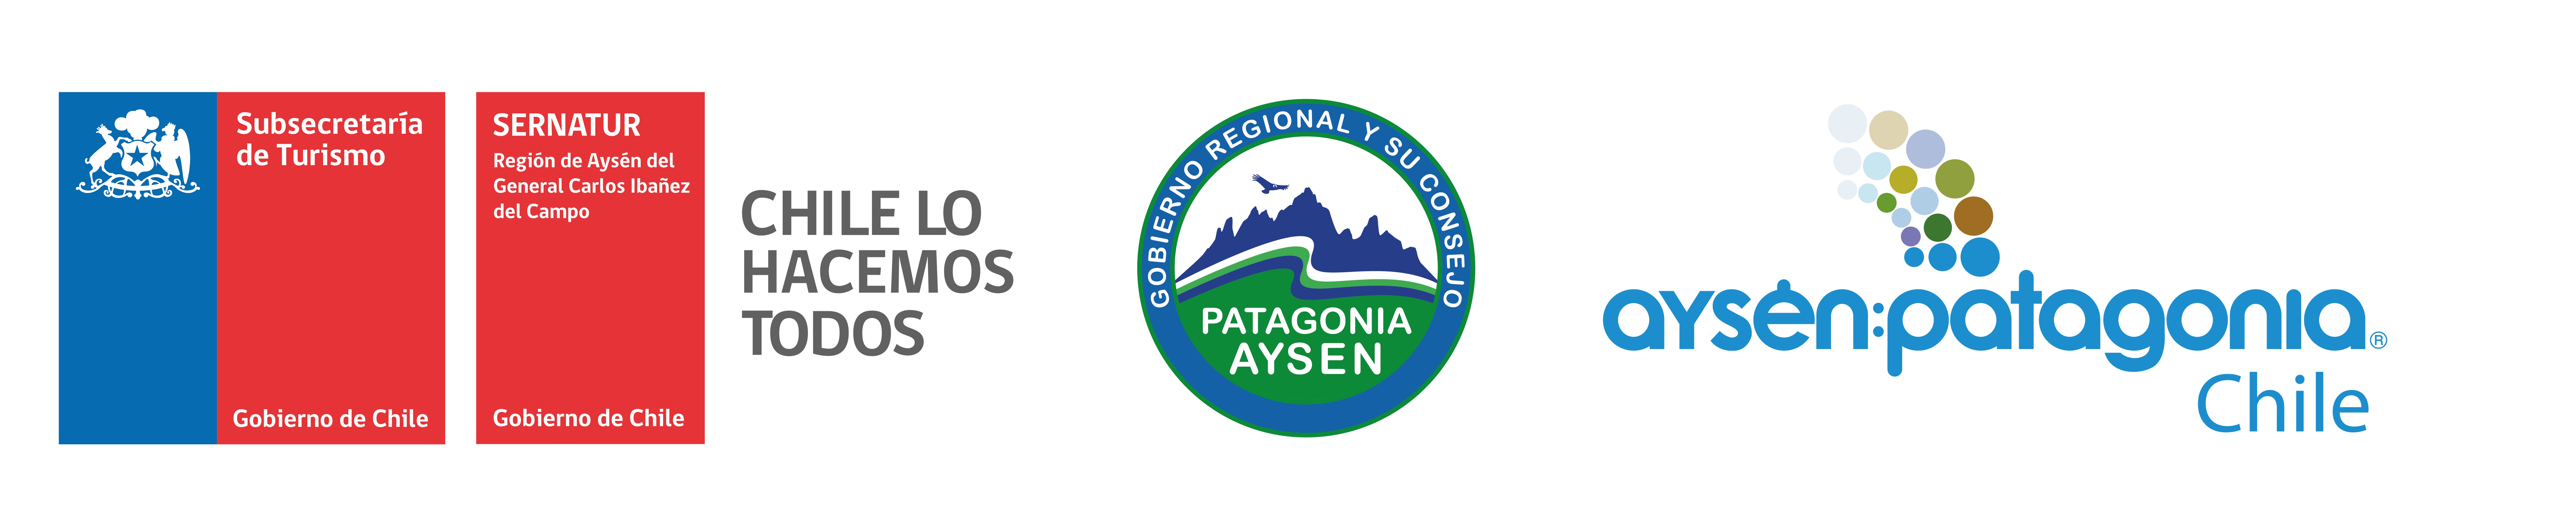 Aysen-Patagonia